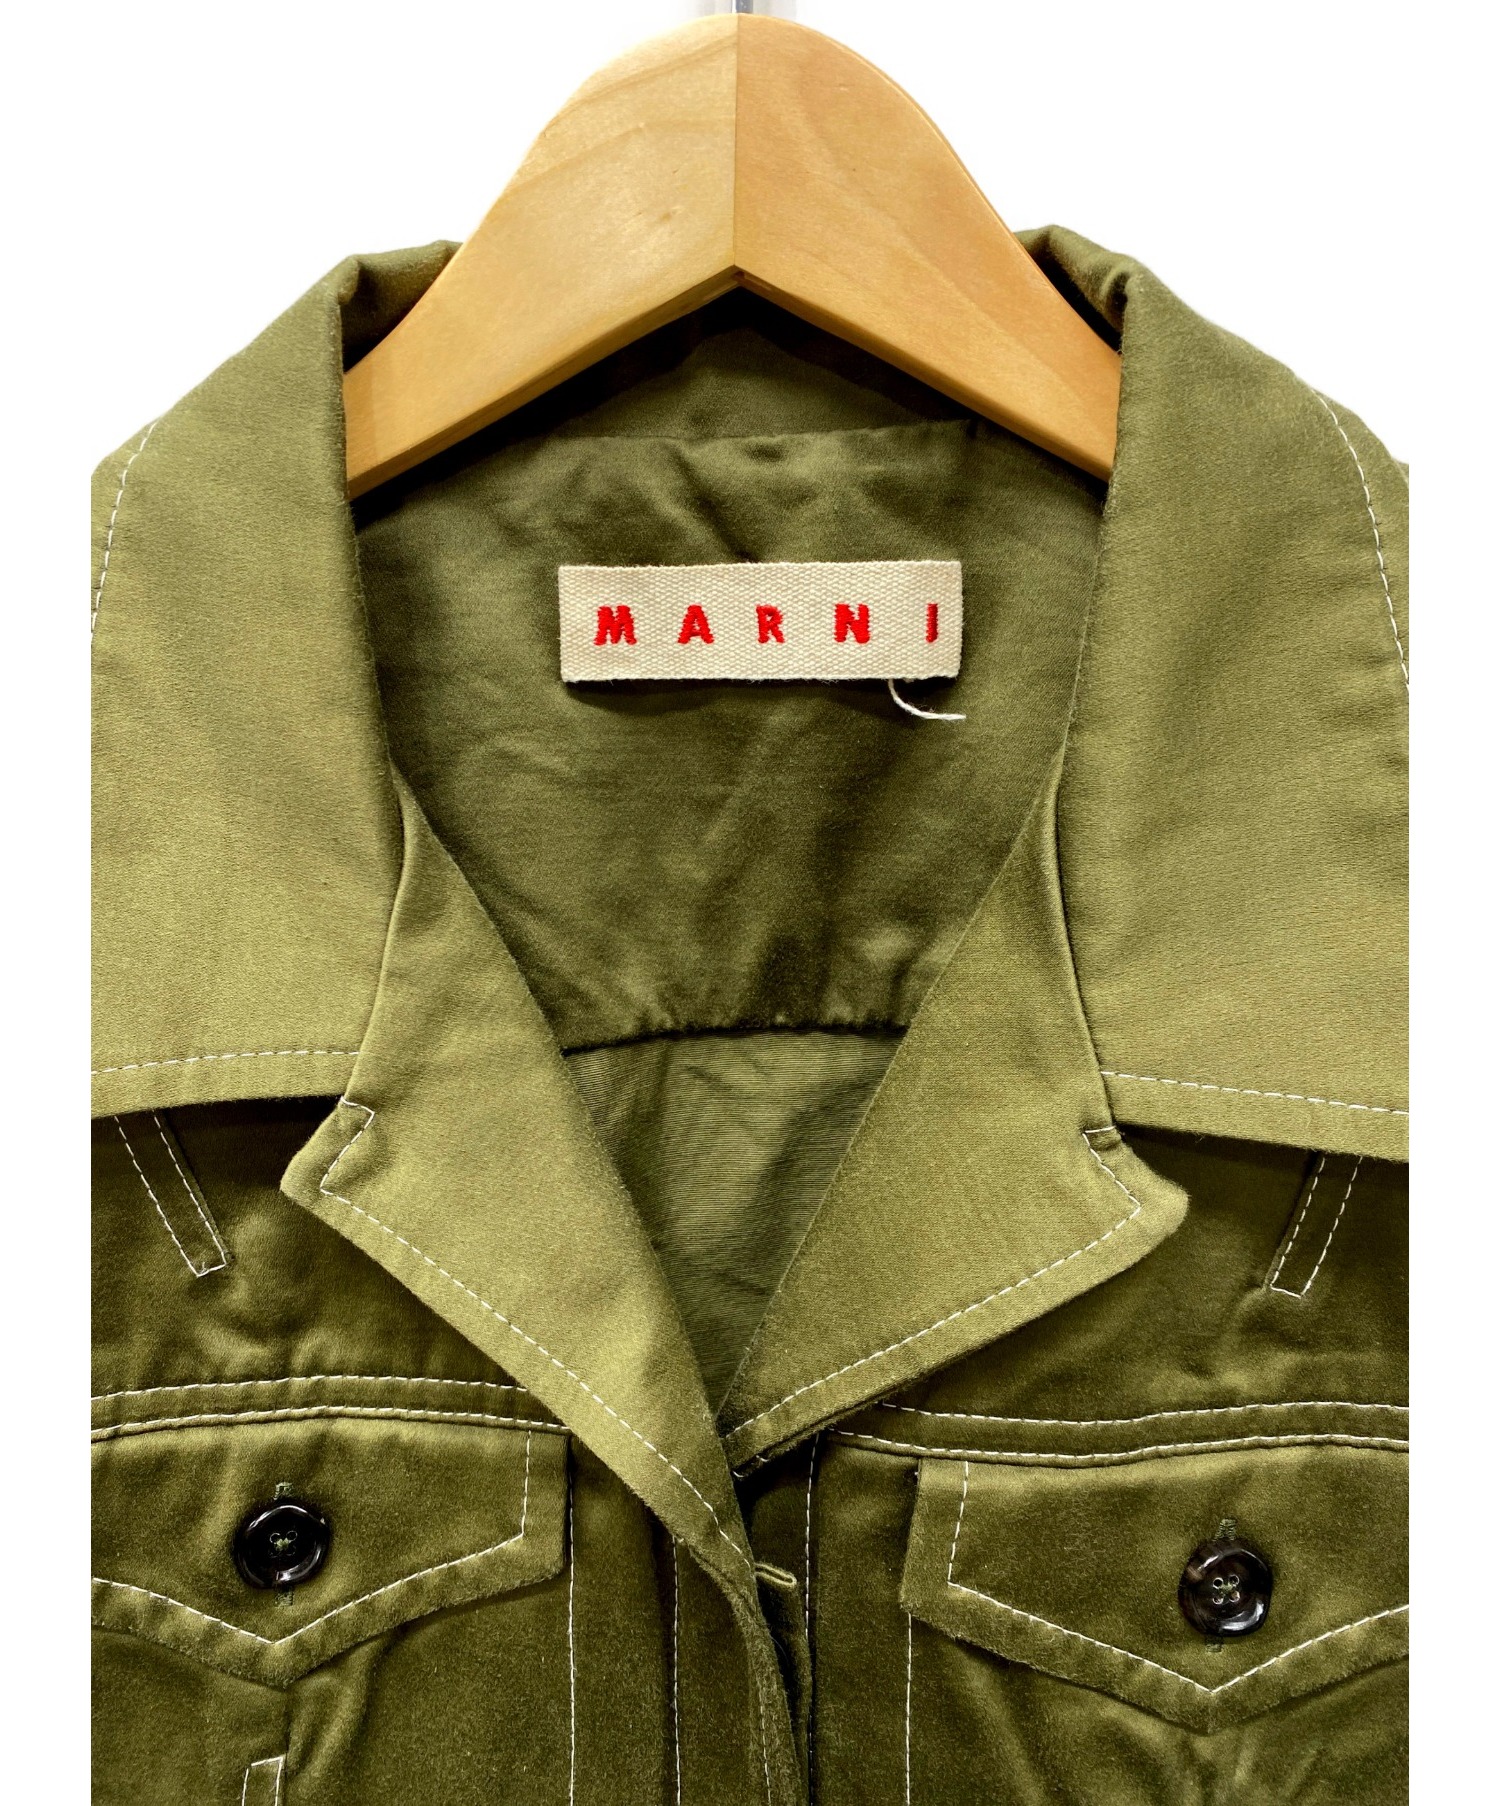 MARNI (マルニ) ステッチワークシャツジャケット カーキ サイズ:44 TOP-STITCHED SHIRT 20SS